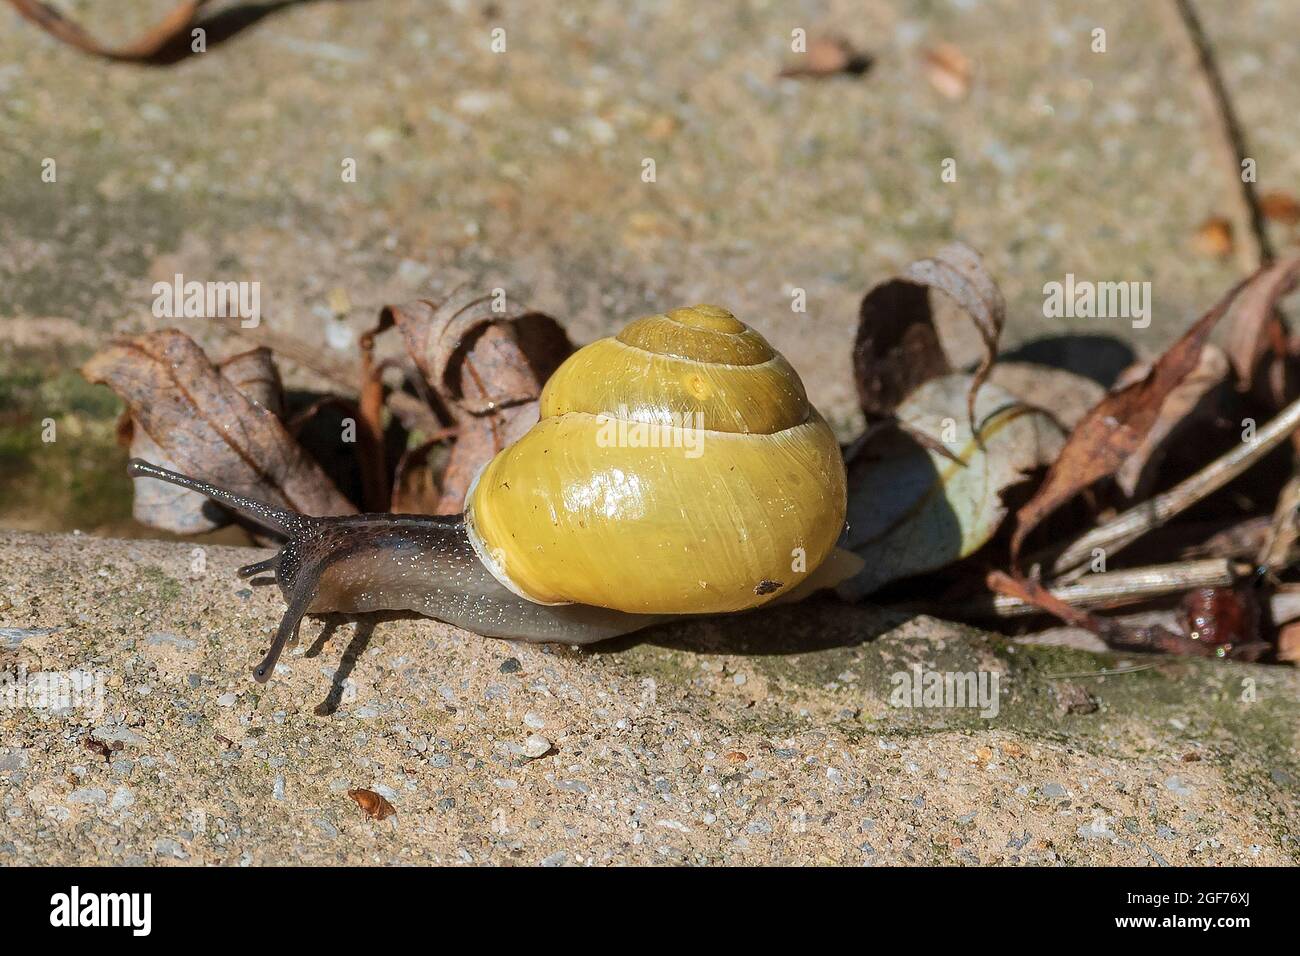 Escargot de jardin commun avec coquille jaune. Cornu aspersum, connu sous le nom commun d'escargot de jardin, est une espèce d'escargot de terre de la famille des Helicidae Banque D'Images